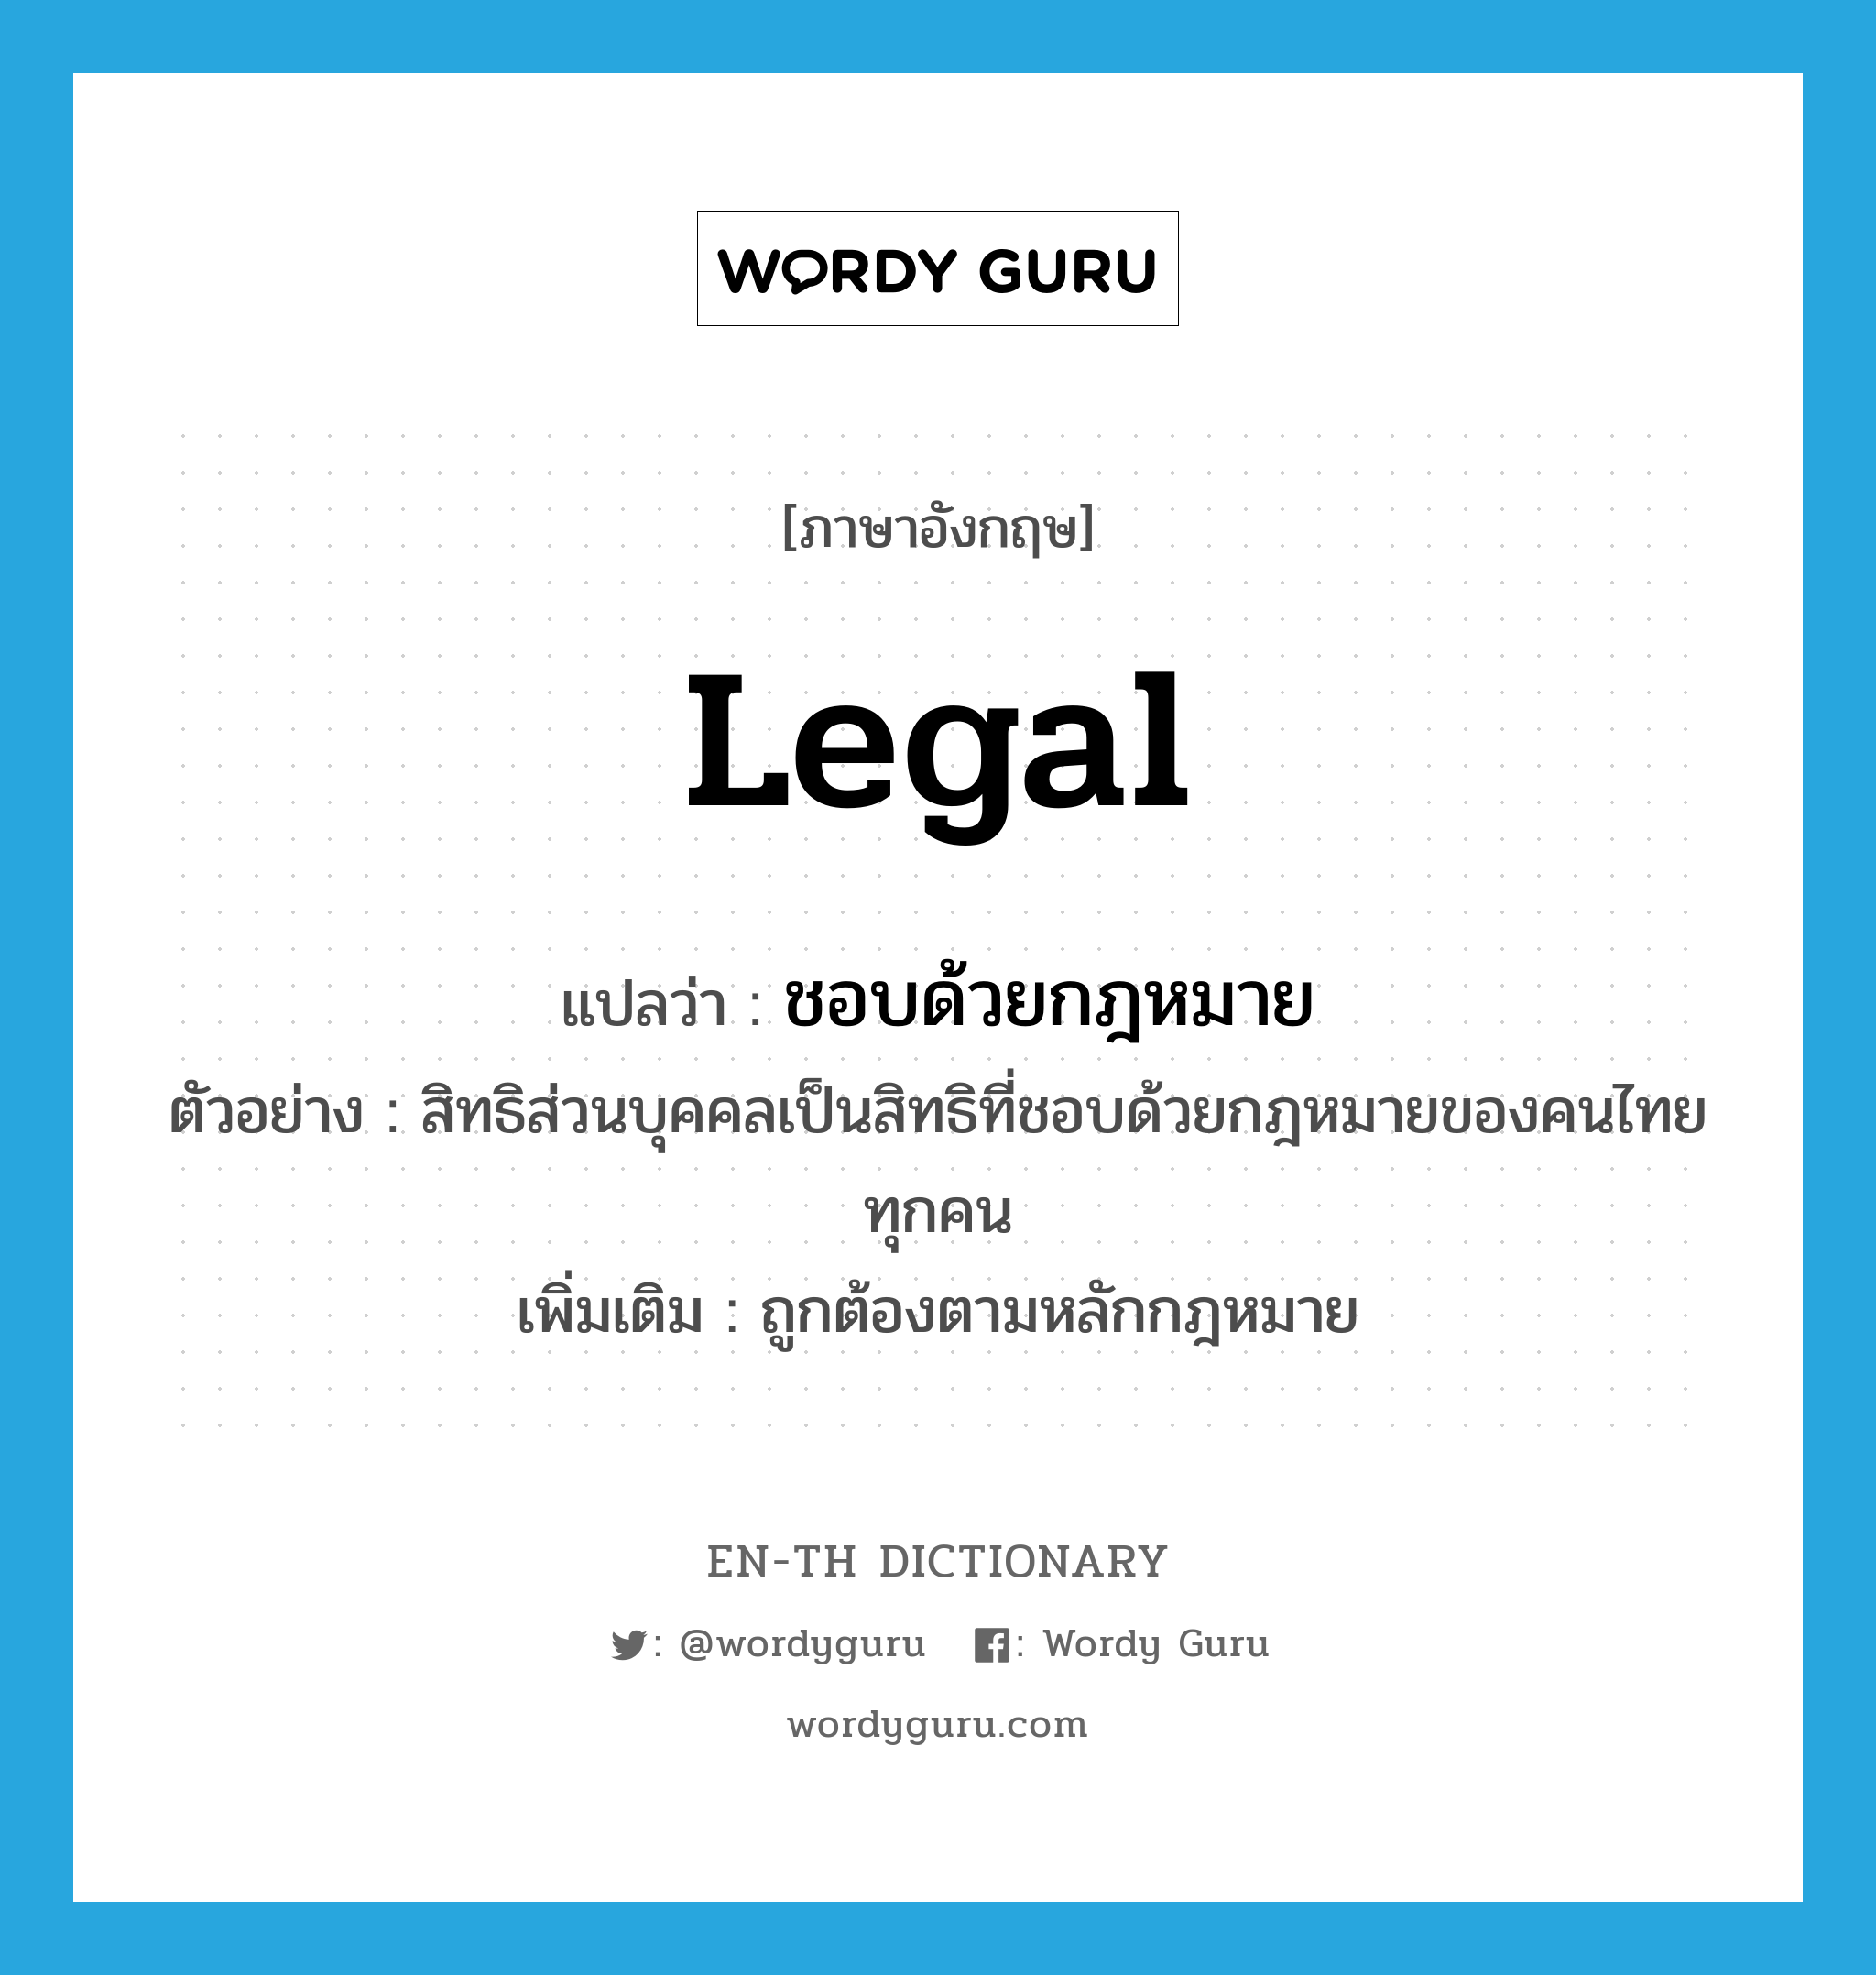 legal แปลว่า?, คำศัพท์ภาษาอังกฤษ legal แปลว่า ชอบด้วยกฎหมาย ประเภท ADJ ตัวอย่าง สิทธิส่วนบุคคลเป็นสิทธิที่ชอบด้วยกฎหมายของคนไทยทุกคน เพิ่มเติม ถูกต้องตามหลักกฎหมาย หมวด ADJ